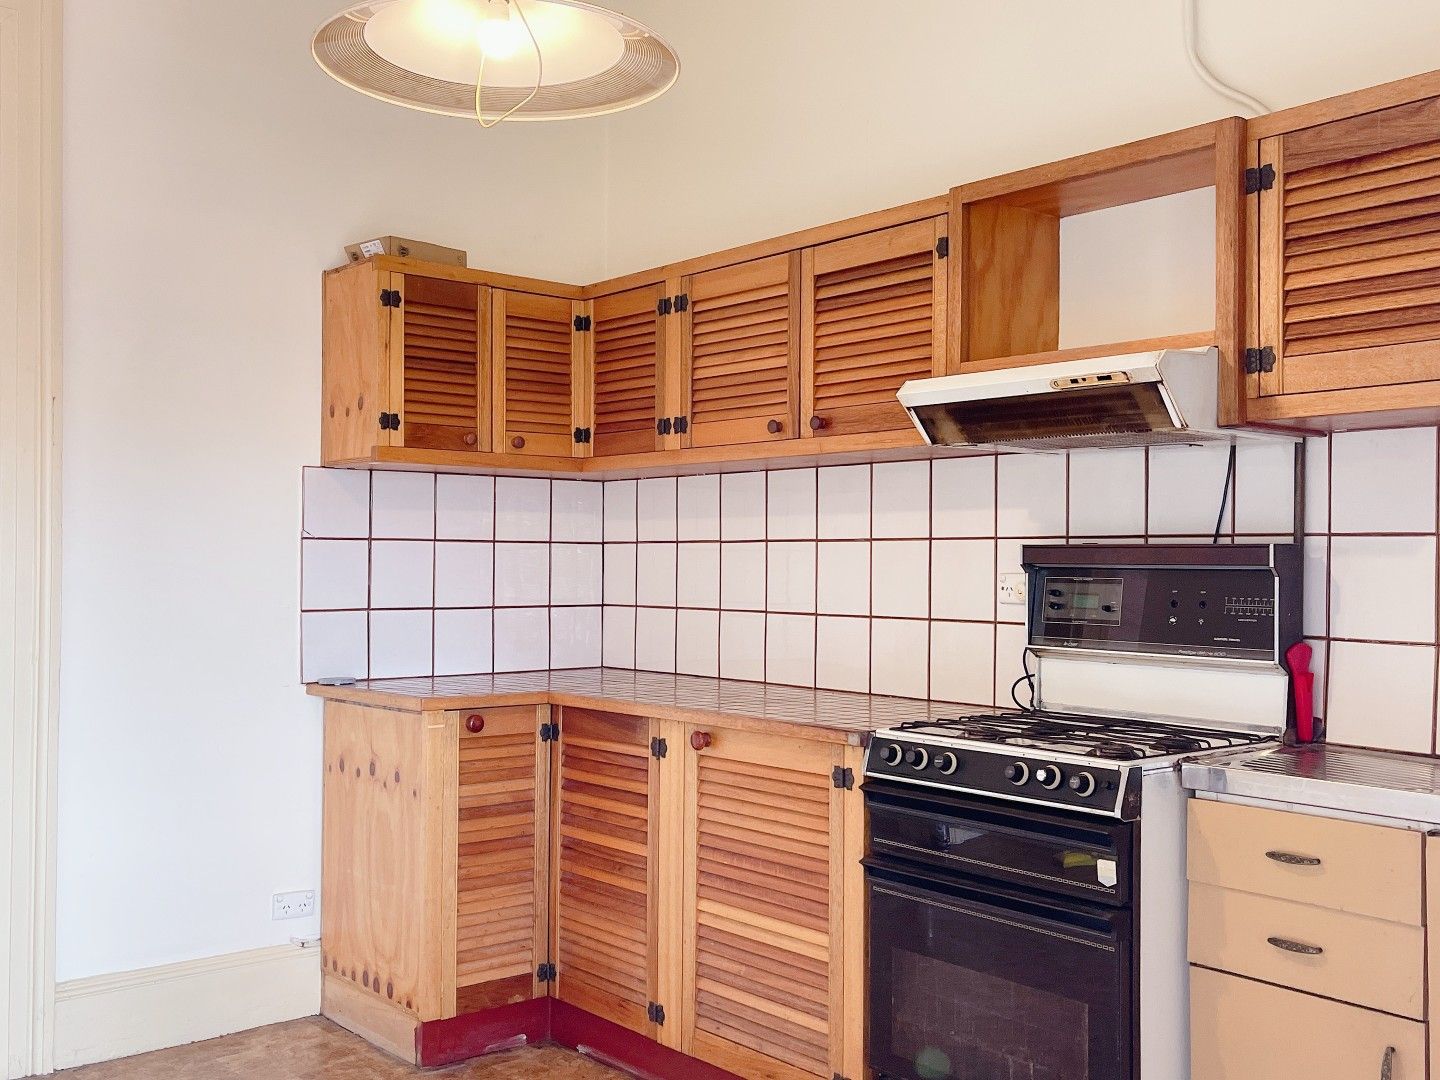 2 bedrooms House in 2/37 Belgrave street BURWOOD NSW, 2134